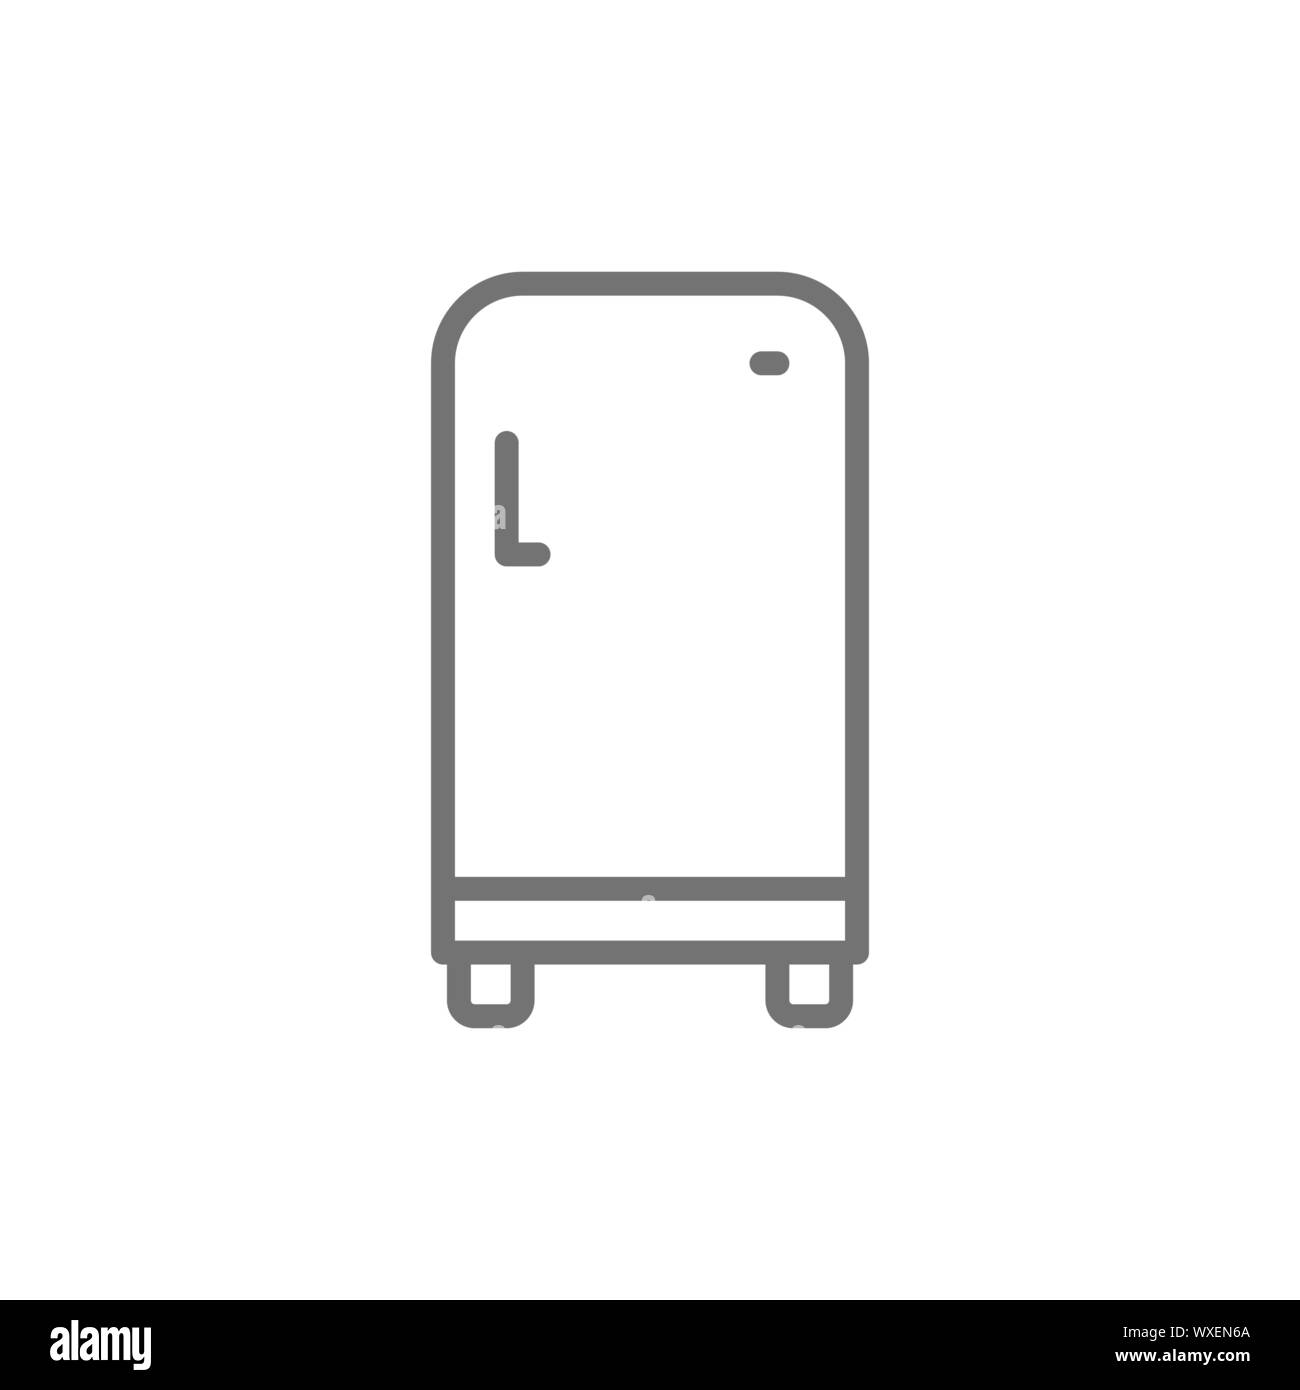 Retro fridge, single compartment refrigerator line icon. Stock Vector